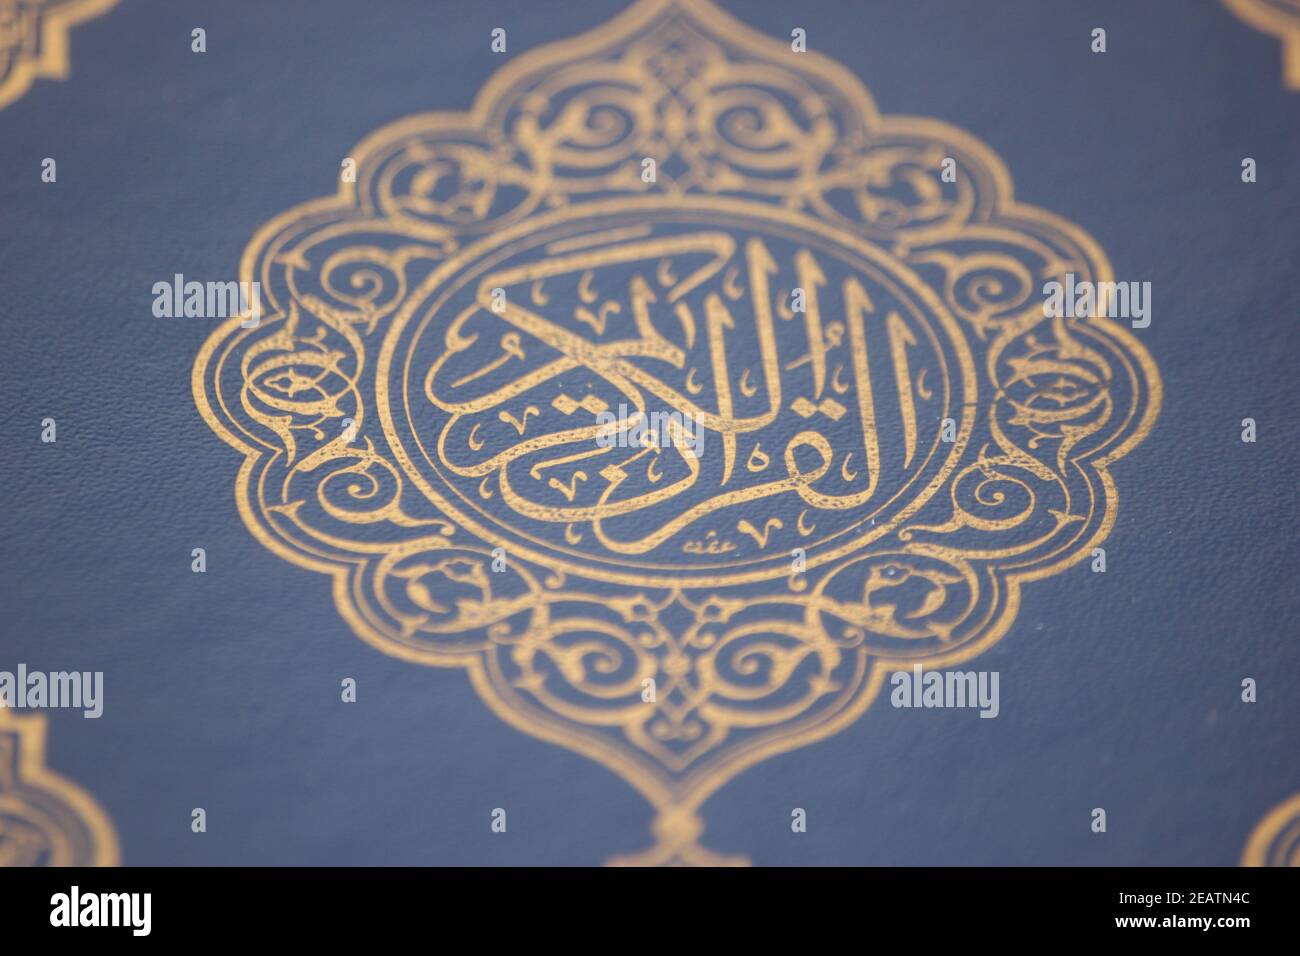 Gros plan du Coran de livre islamique avec la calligraphie arabe dorée Banque D'Images